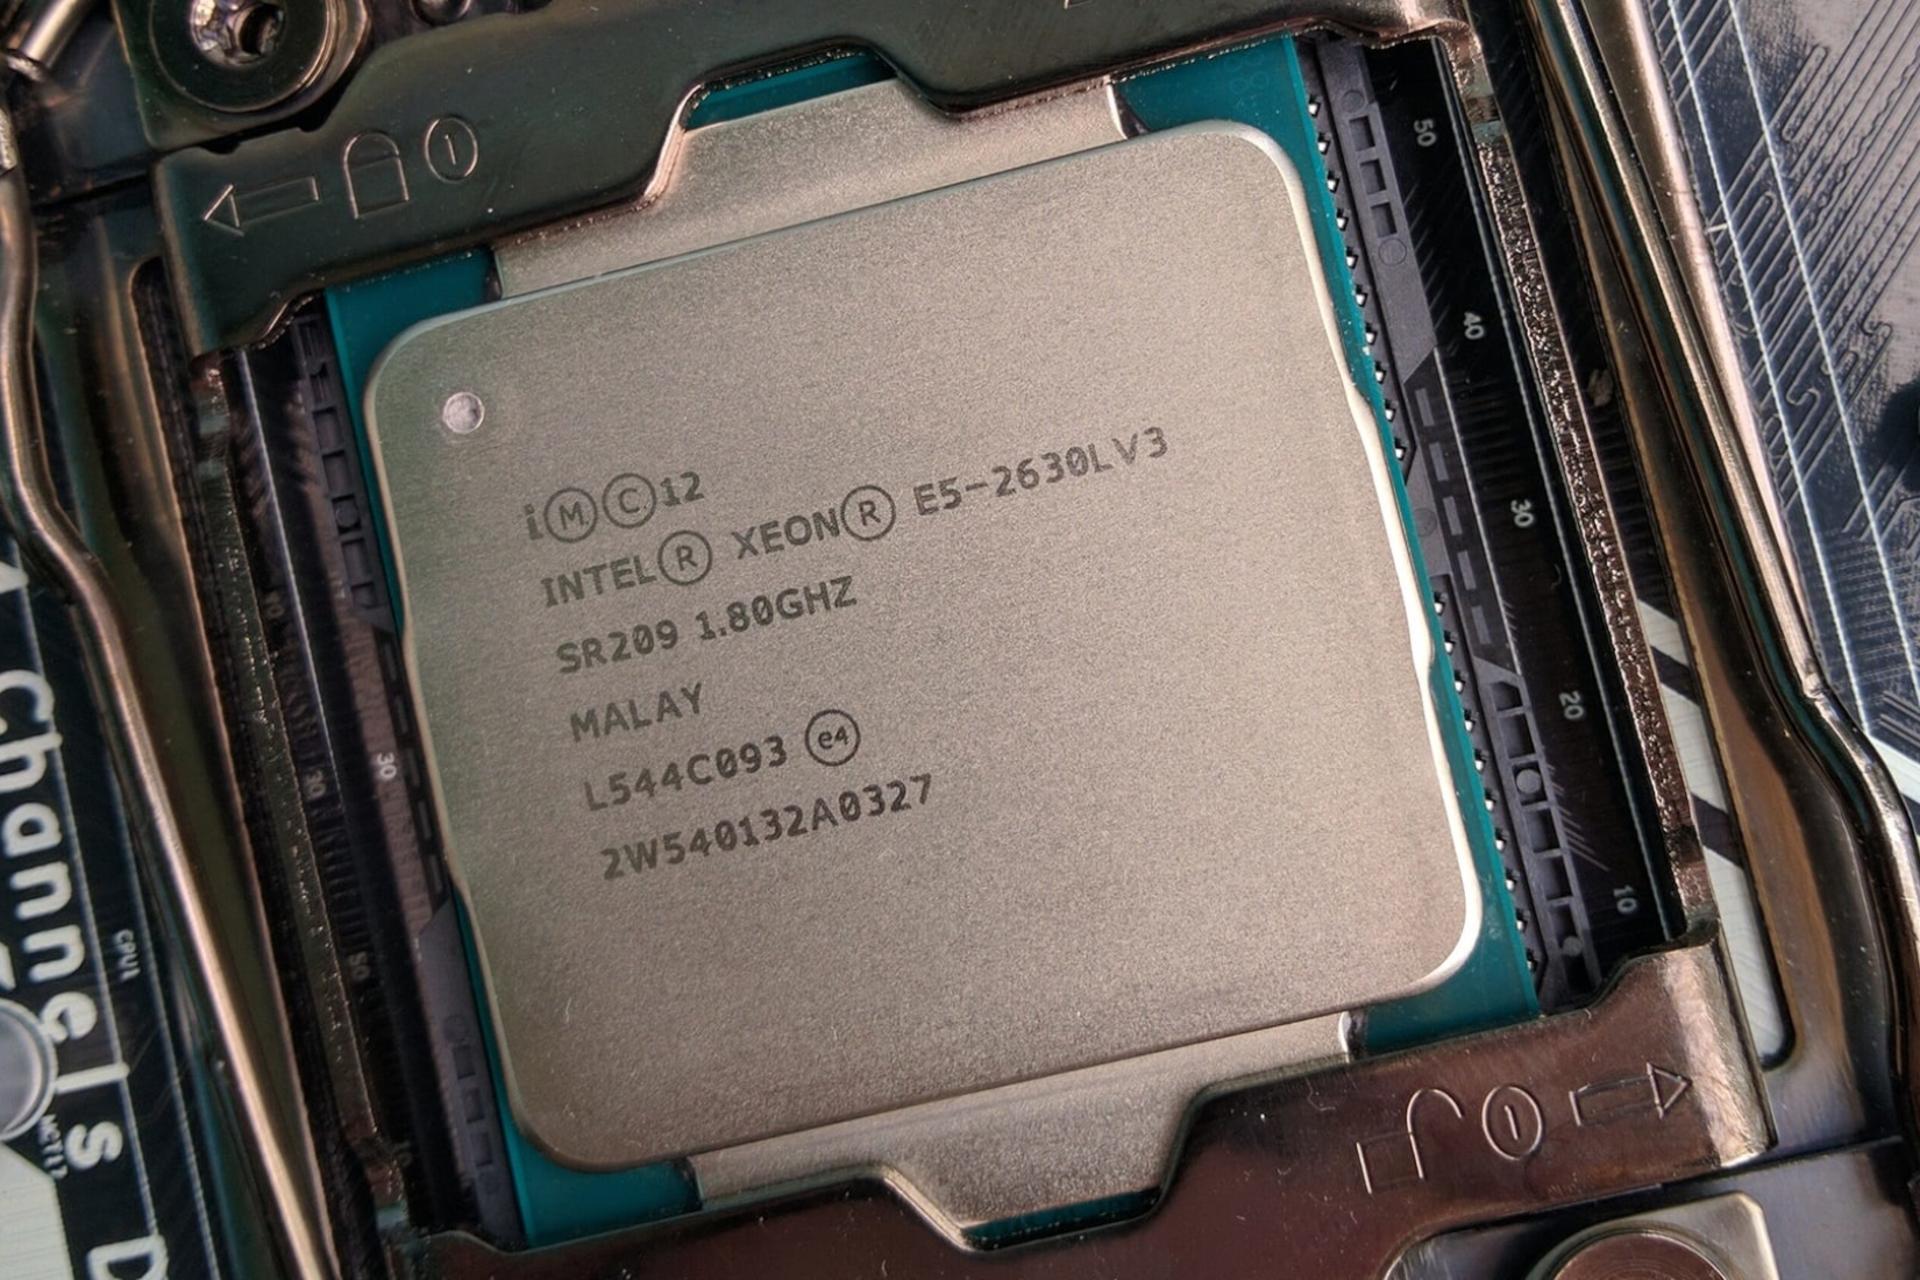 پردازنده اینتل Intel Xeon E5-2630L v3 روی مادربرد